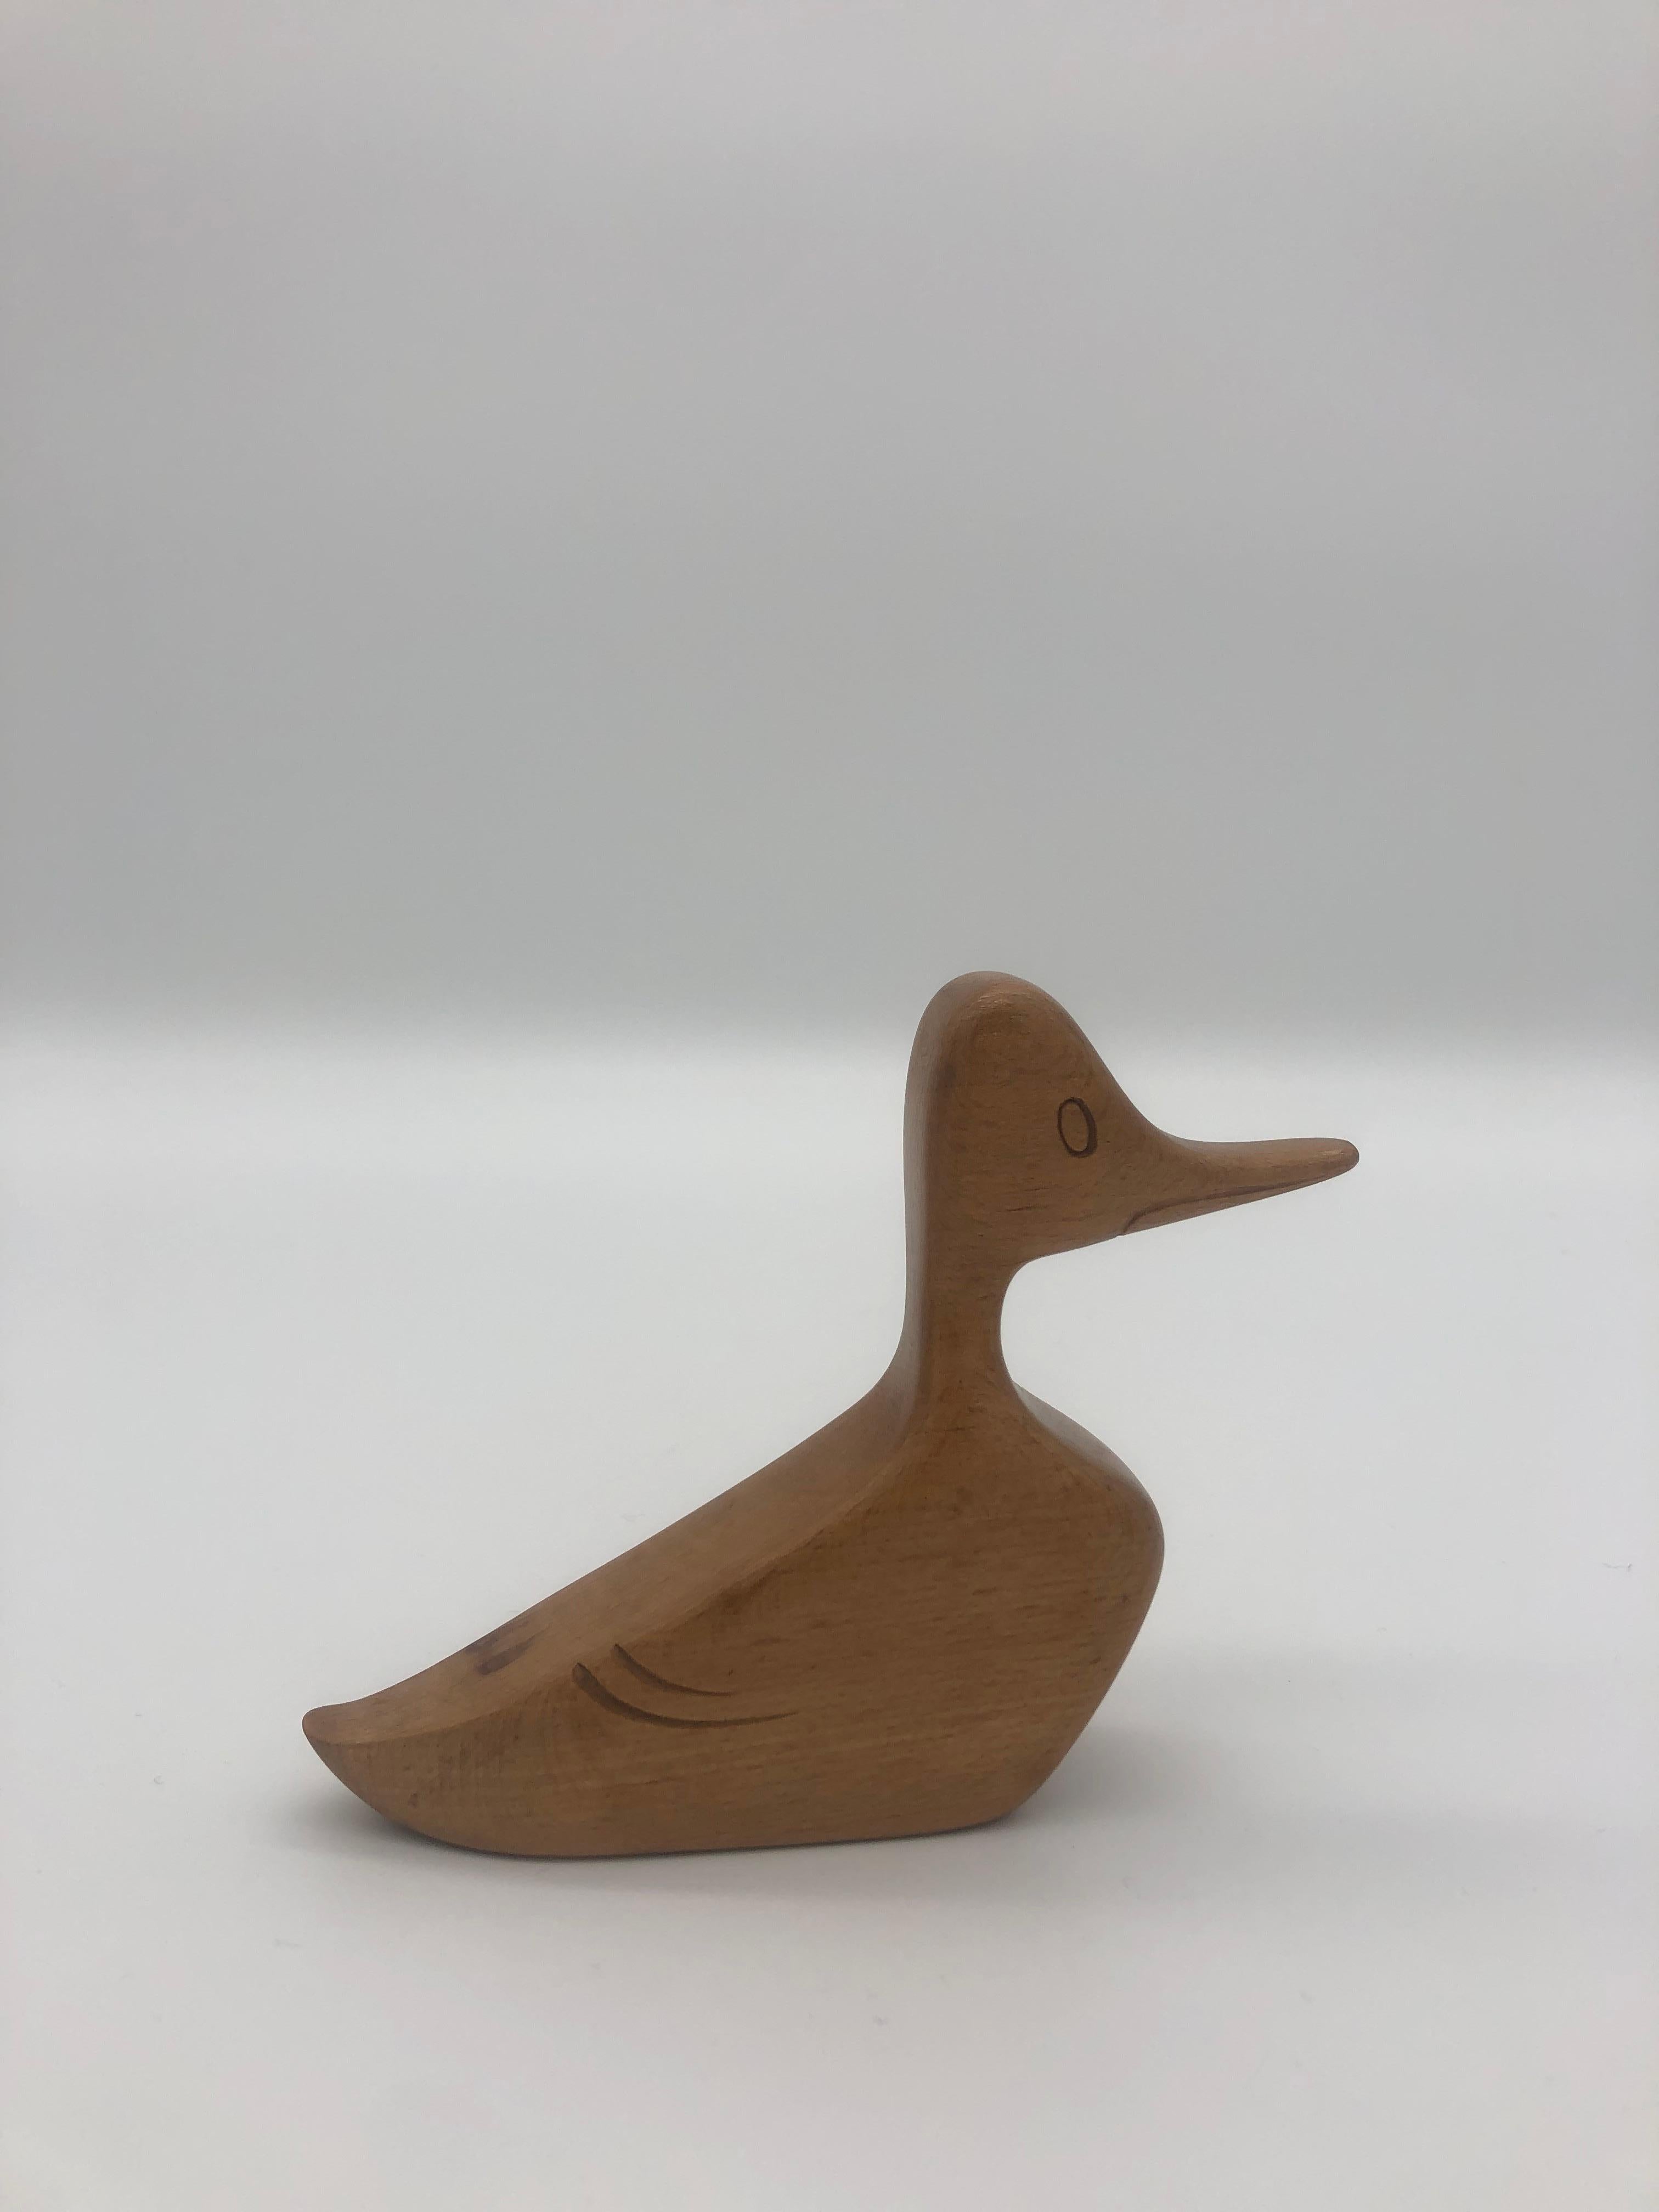 Wooden Duck by Franz Hagenauer, Vienna, Austria For Sale 4